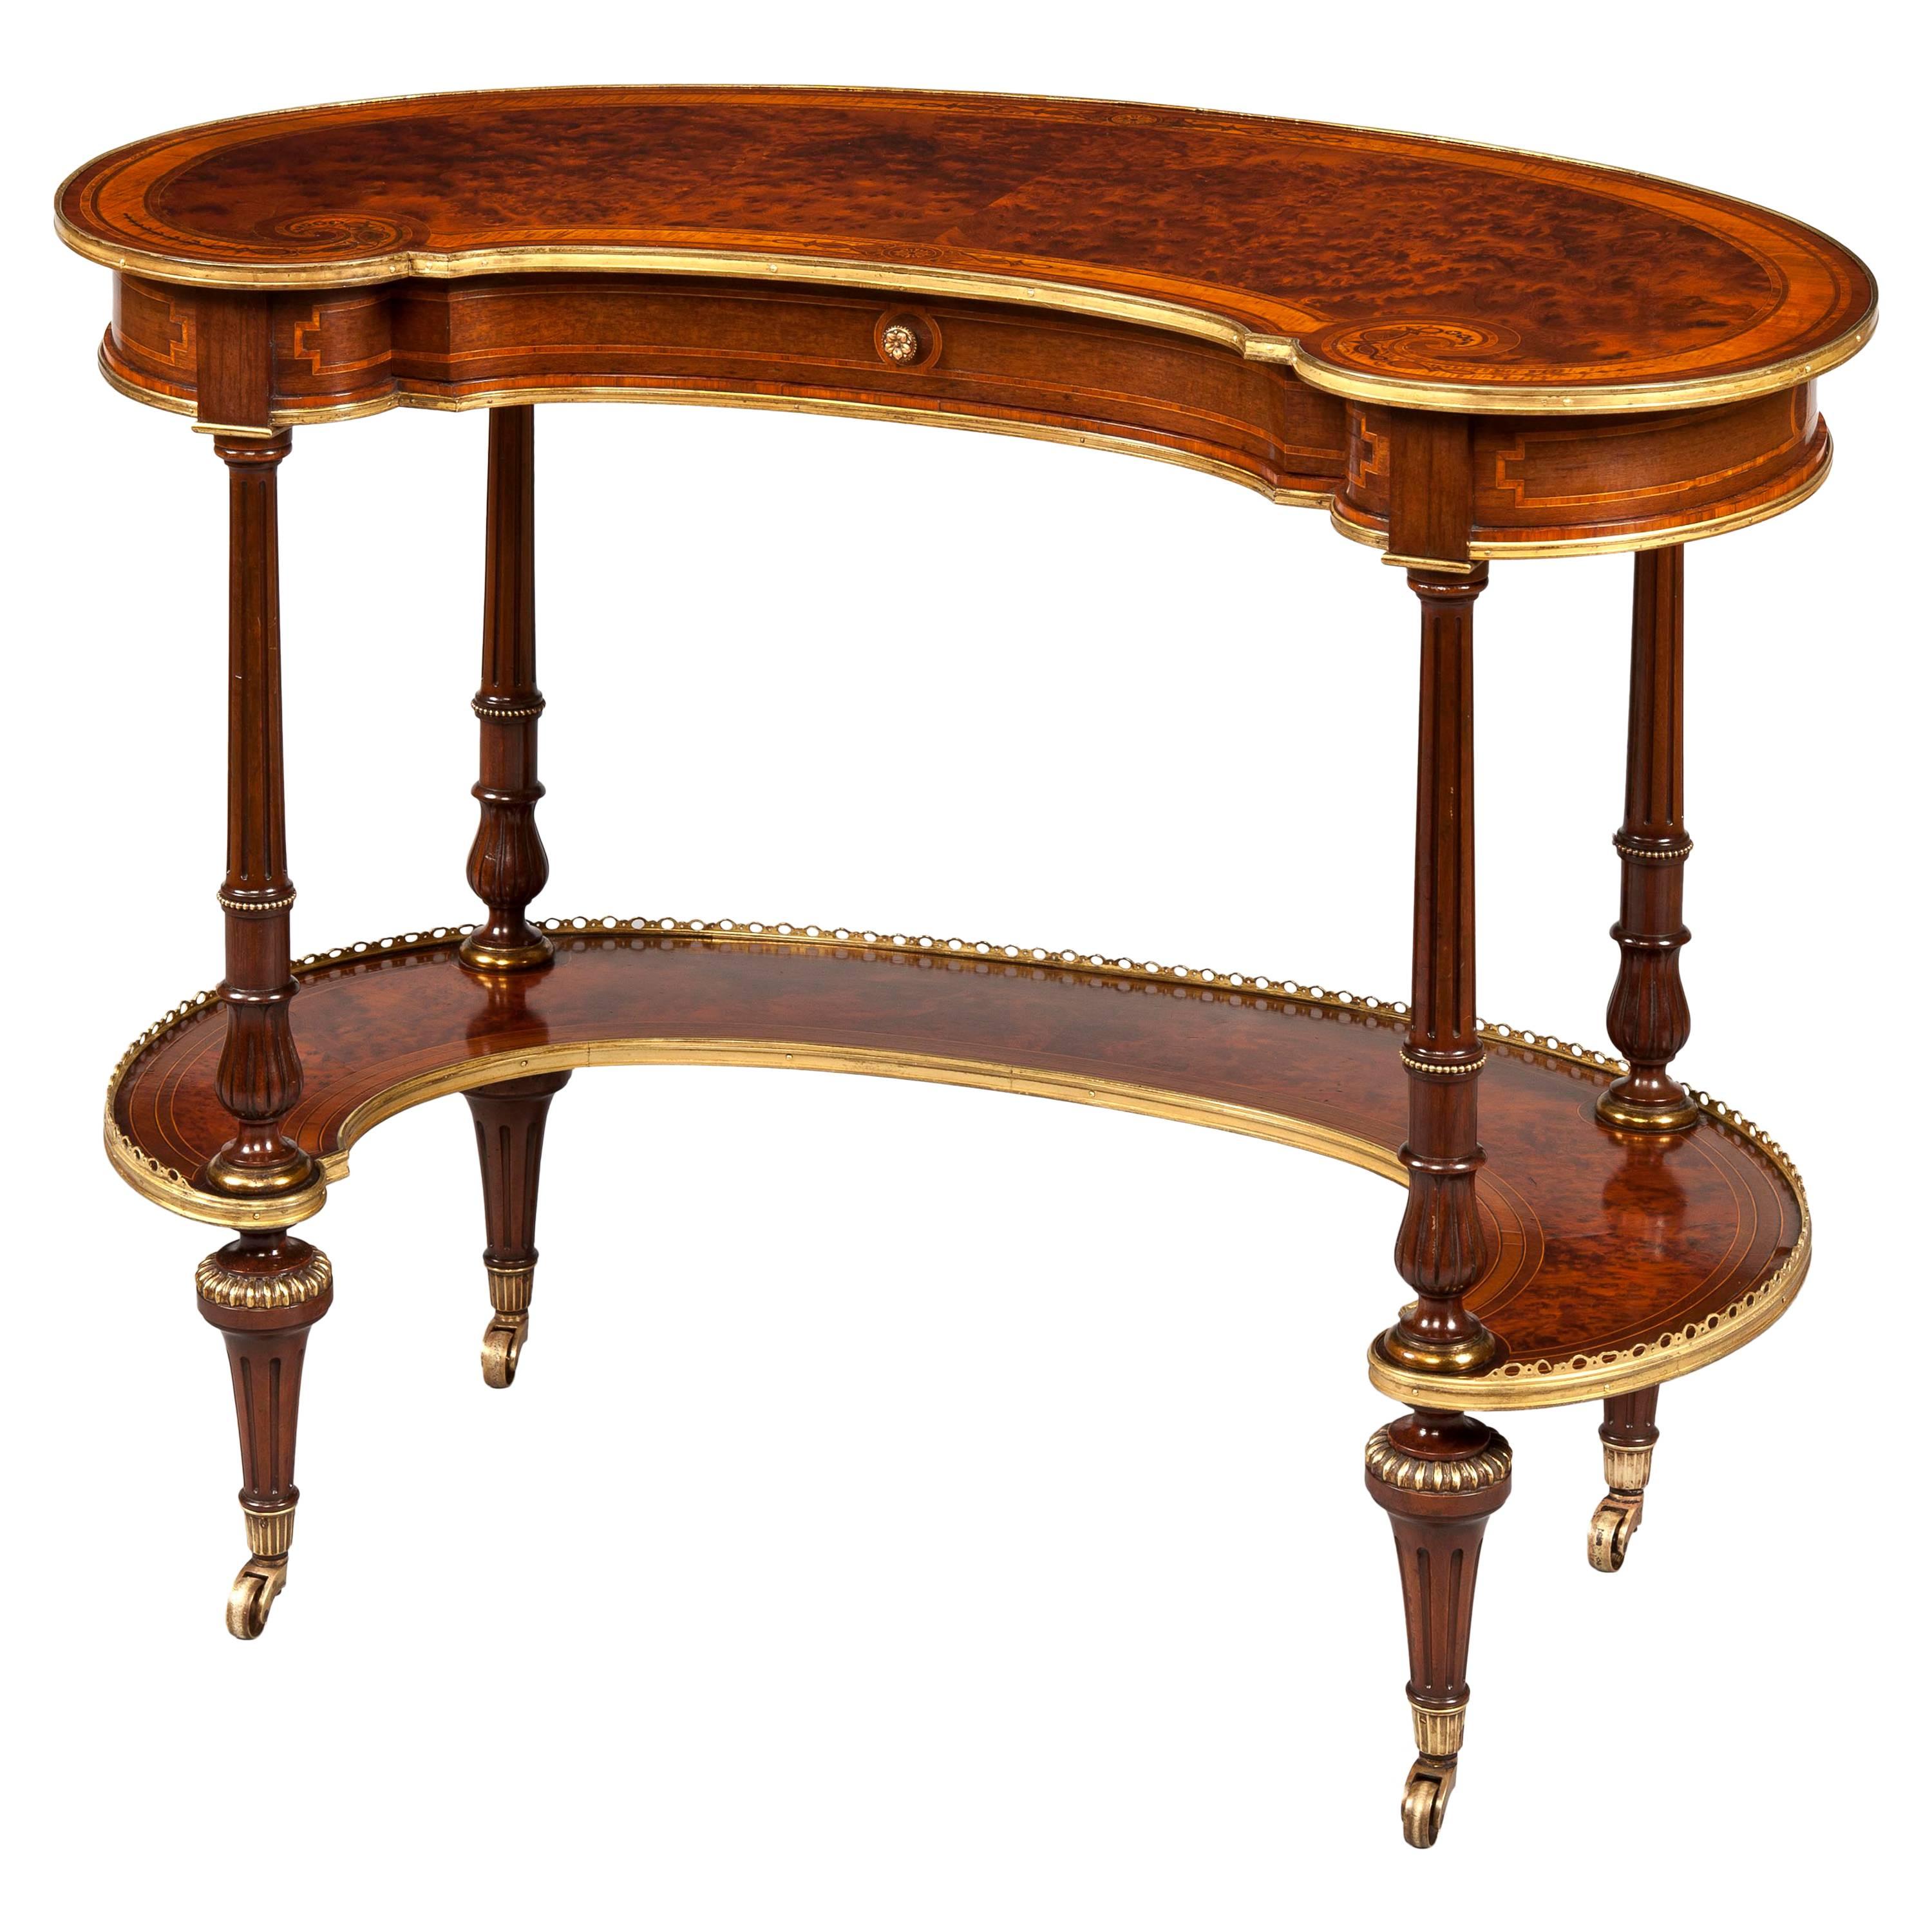 Table en forme de rein avec marqueterie et laiton doré, XIXe siècle